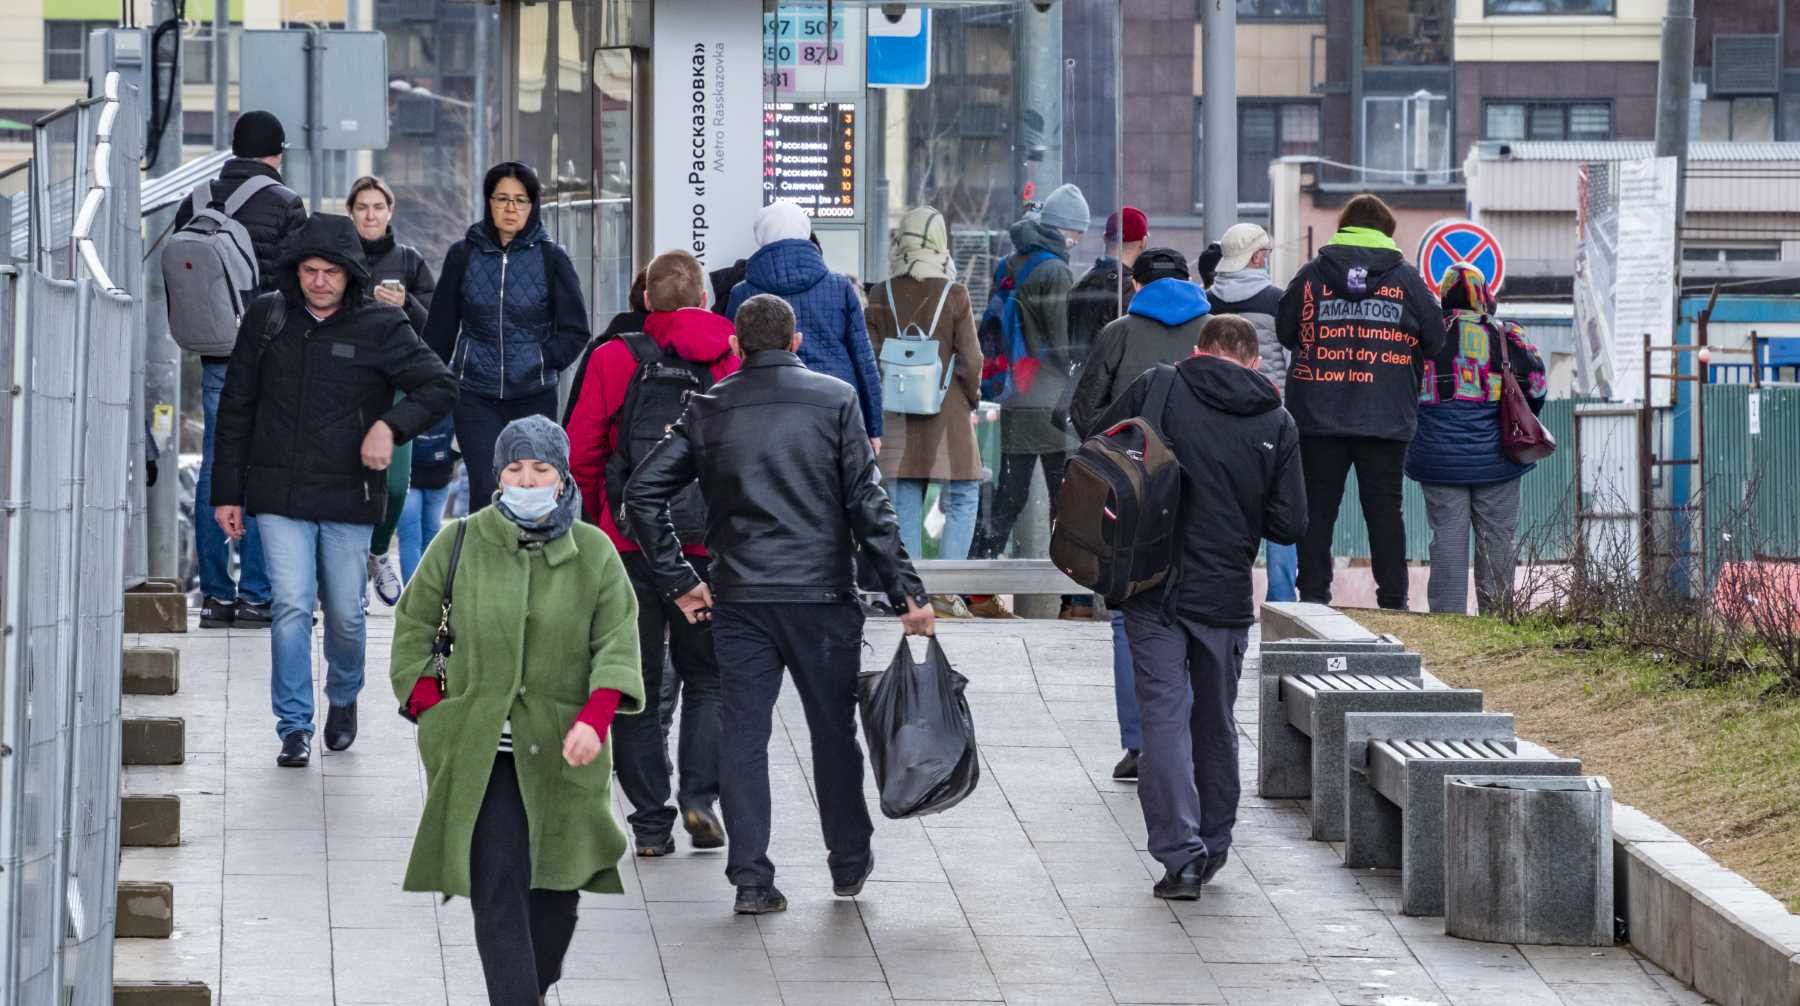 Минимум за семь месяцев: в России за сутки выявили 8053 заразившихся COVID-19